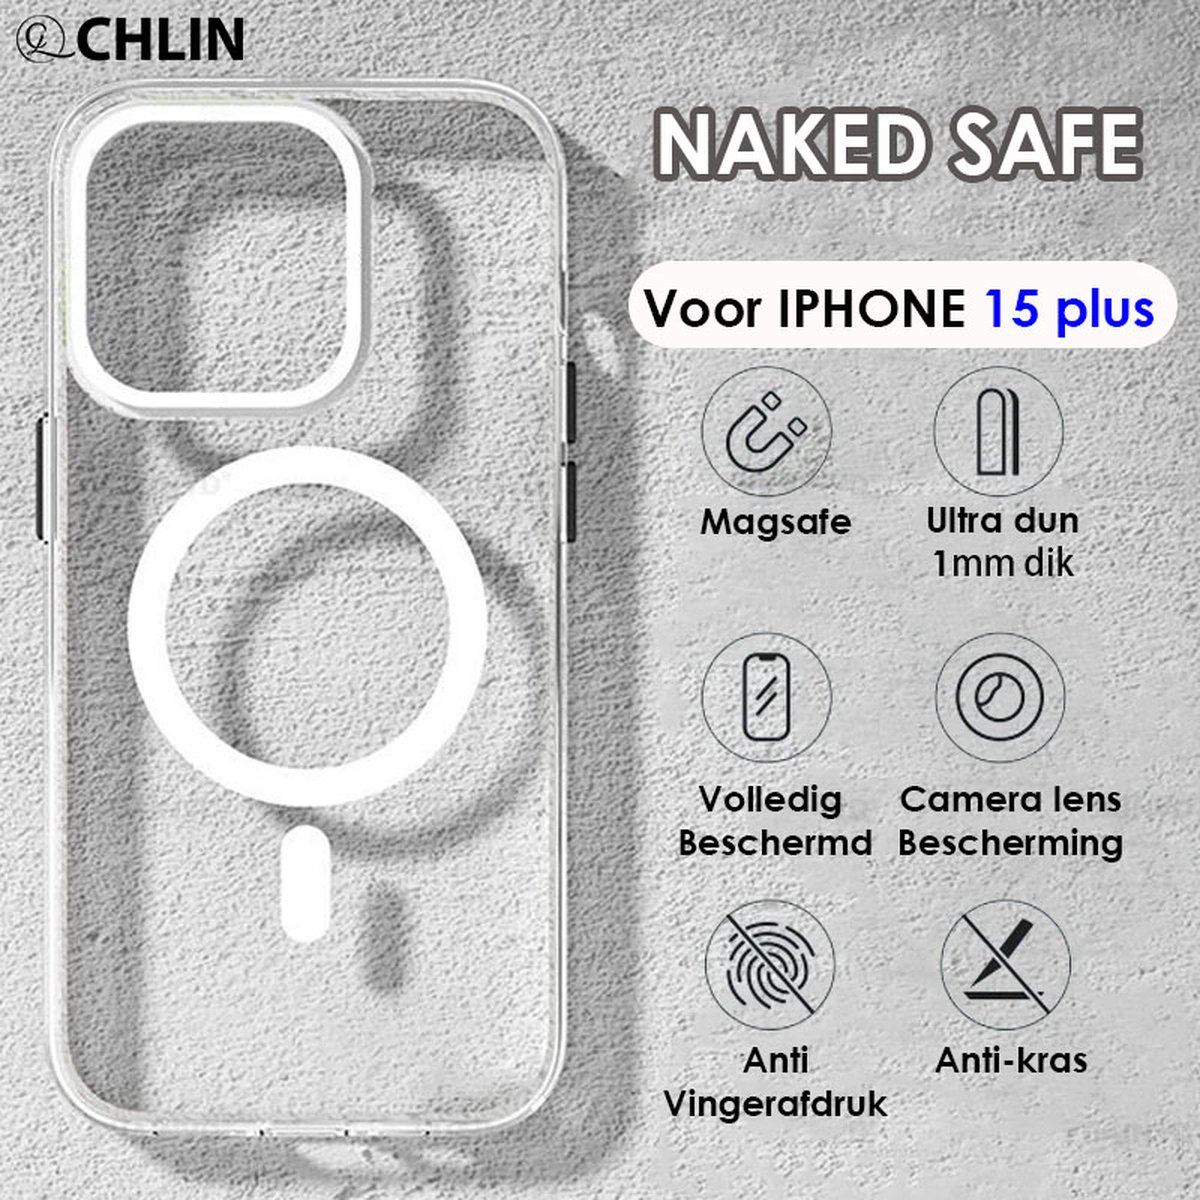 CL CHLIN Naked Safe - transparant Hoesje voor Iphone 15 plus met Magsafe magneet en Matrix airbag - Iphone 15 hoesje nieuw model - Dun hoesje iphone 15 plus - Iphone 15 plus - Iphone 15 plus Accessoires - iphone 15 plus case - Kerstcadeau